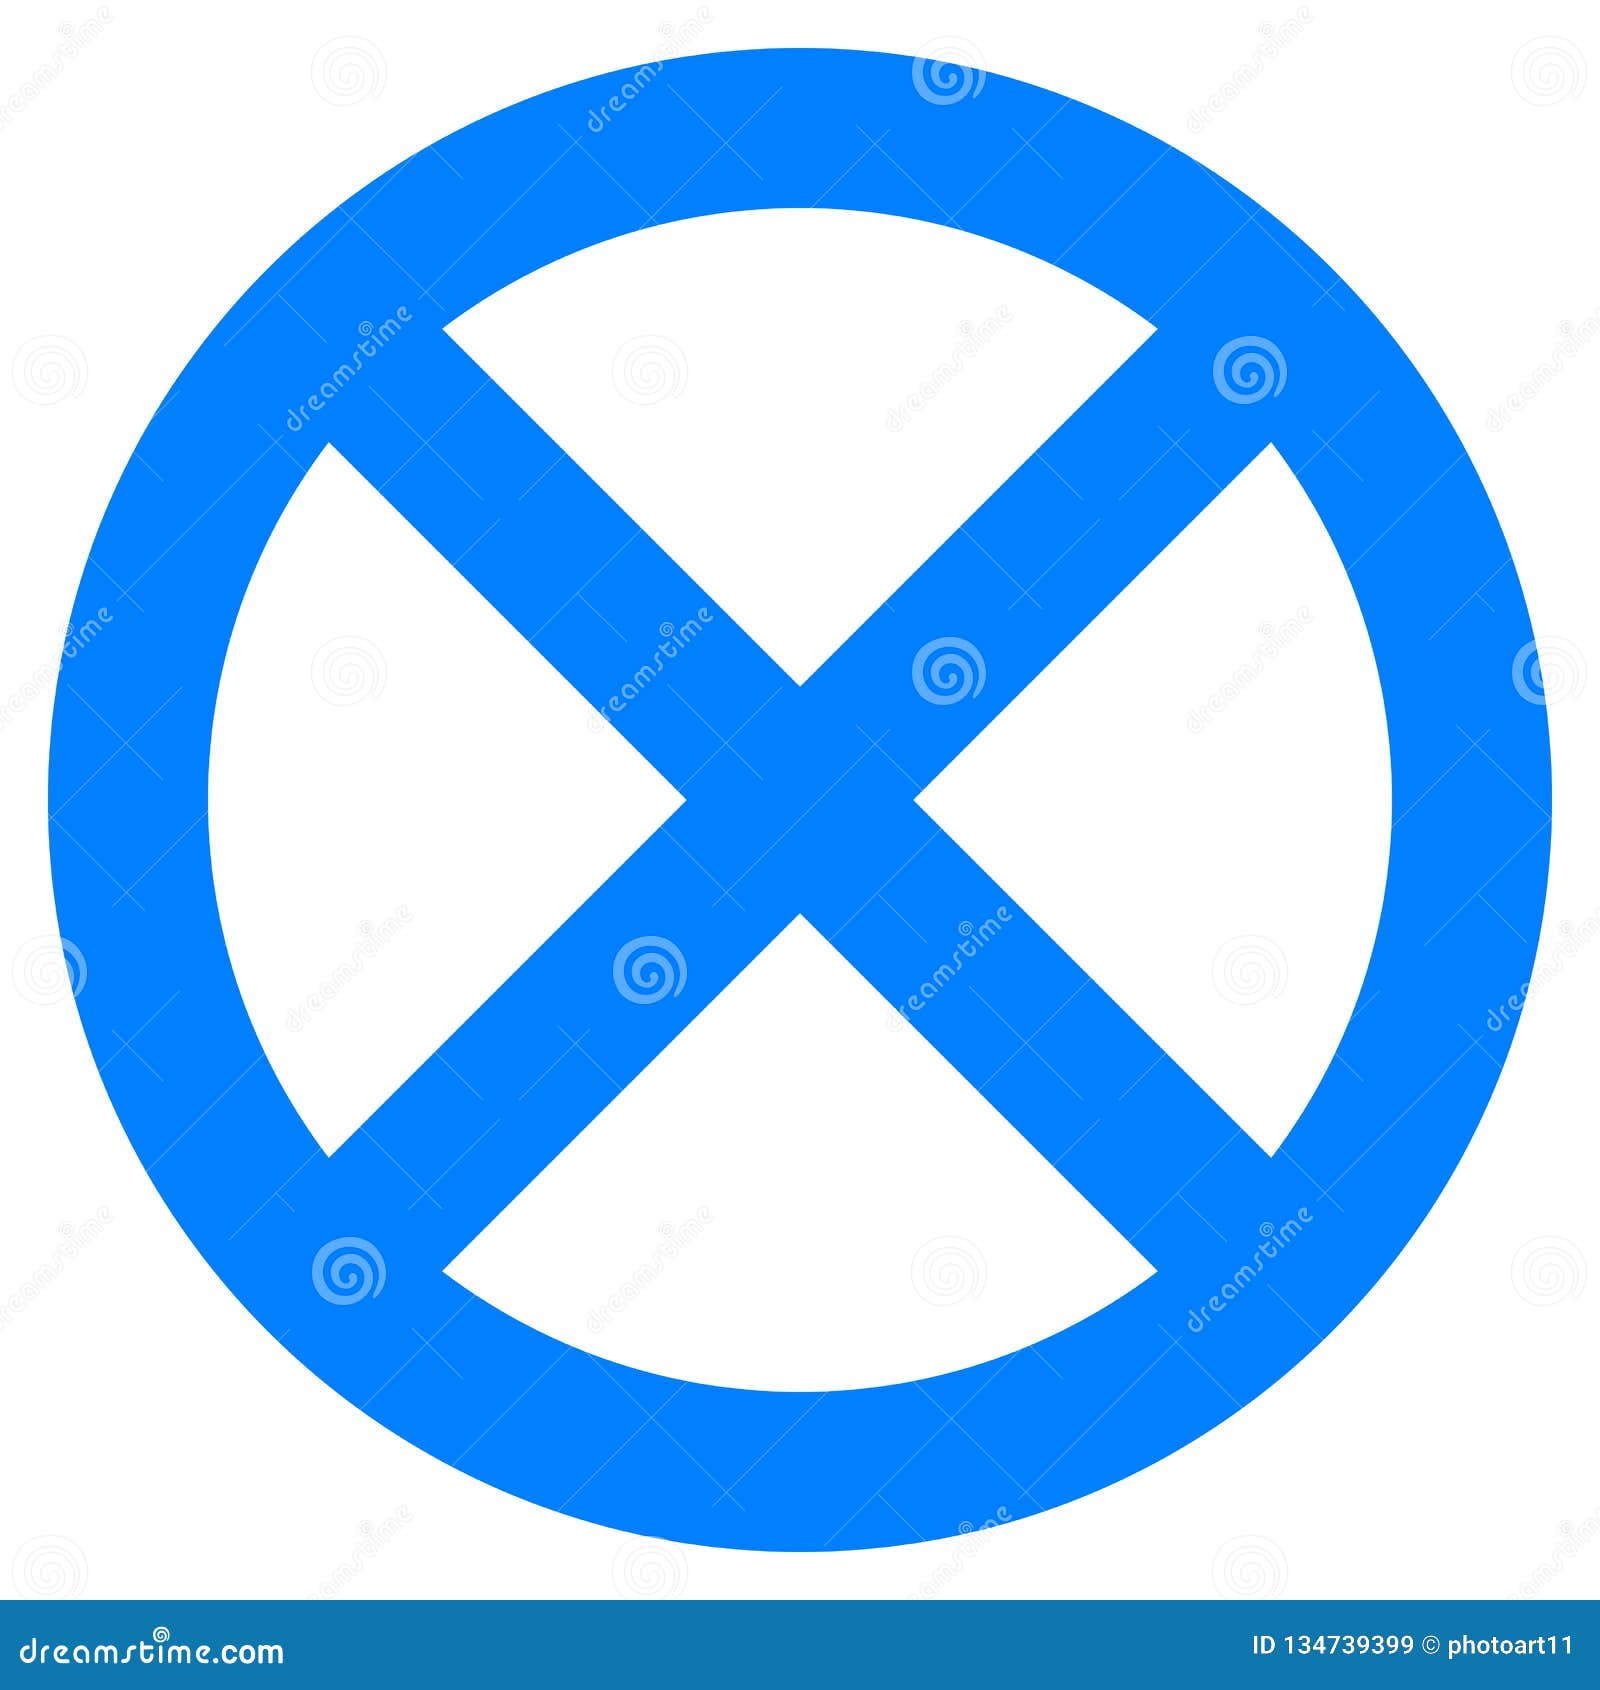 Дорожный знак круг синий перечеркнутый. Перечеркнутый синий круг. Знак круглый синий перечеркнутый. Дорожный знак перечеркнутый круг. Синий знак с белой полосой перечеркнут.